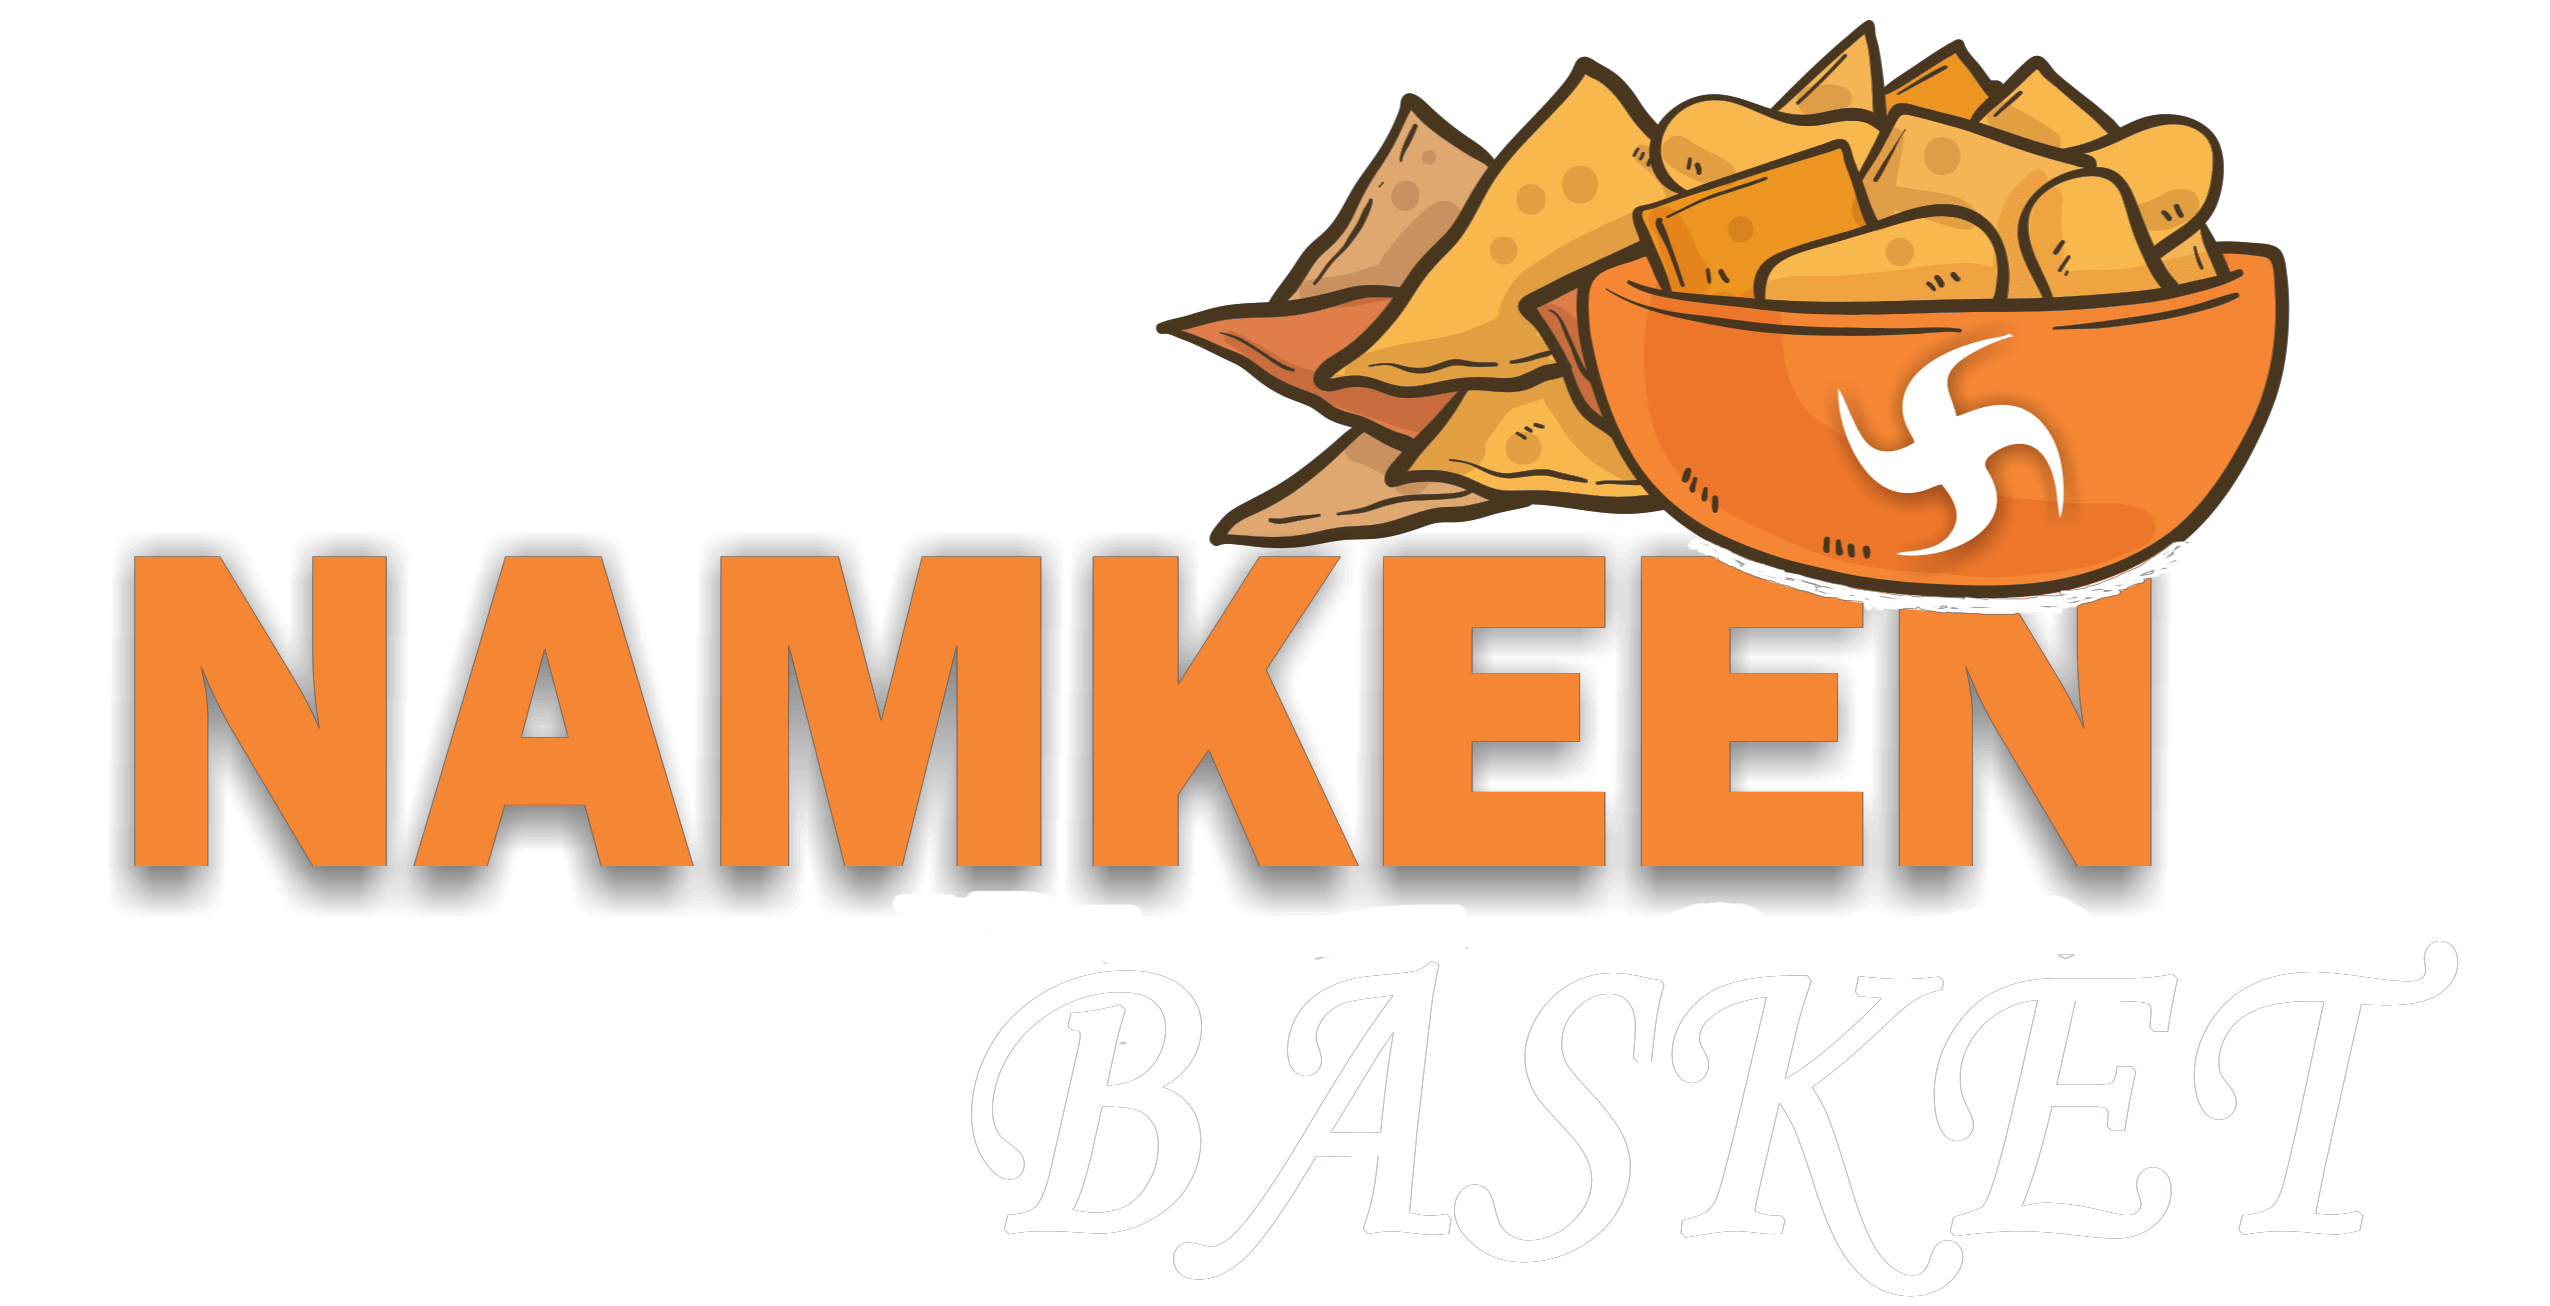 Namkeen Basket